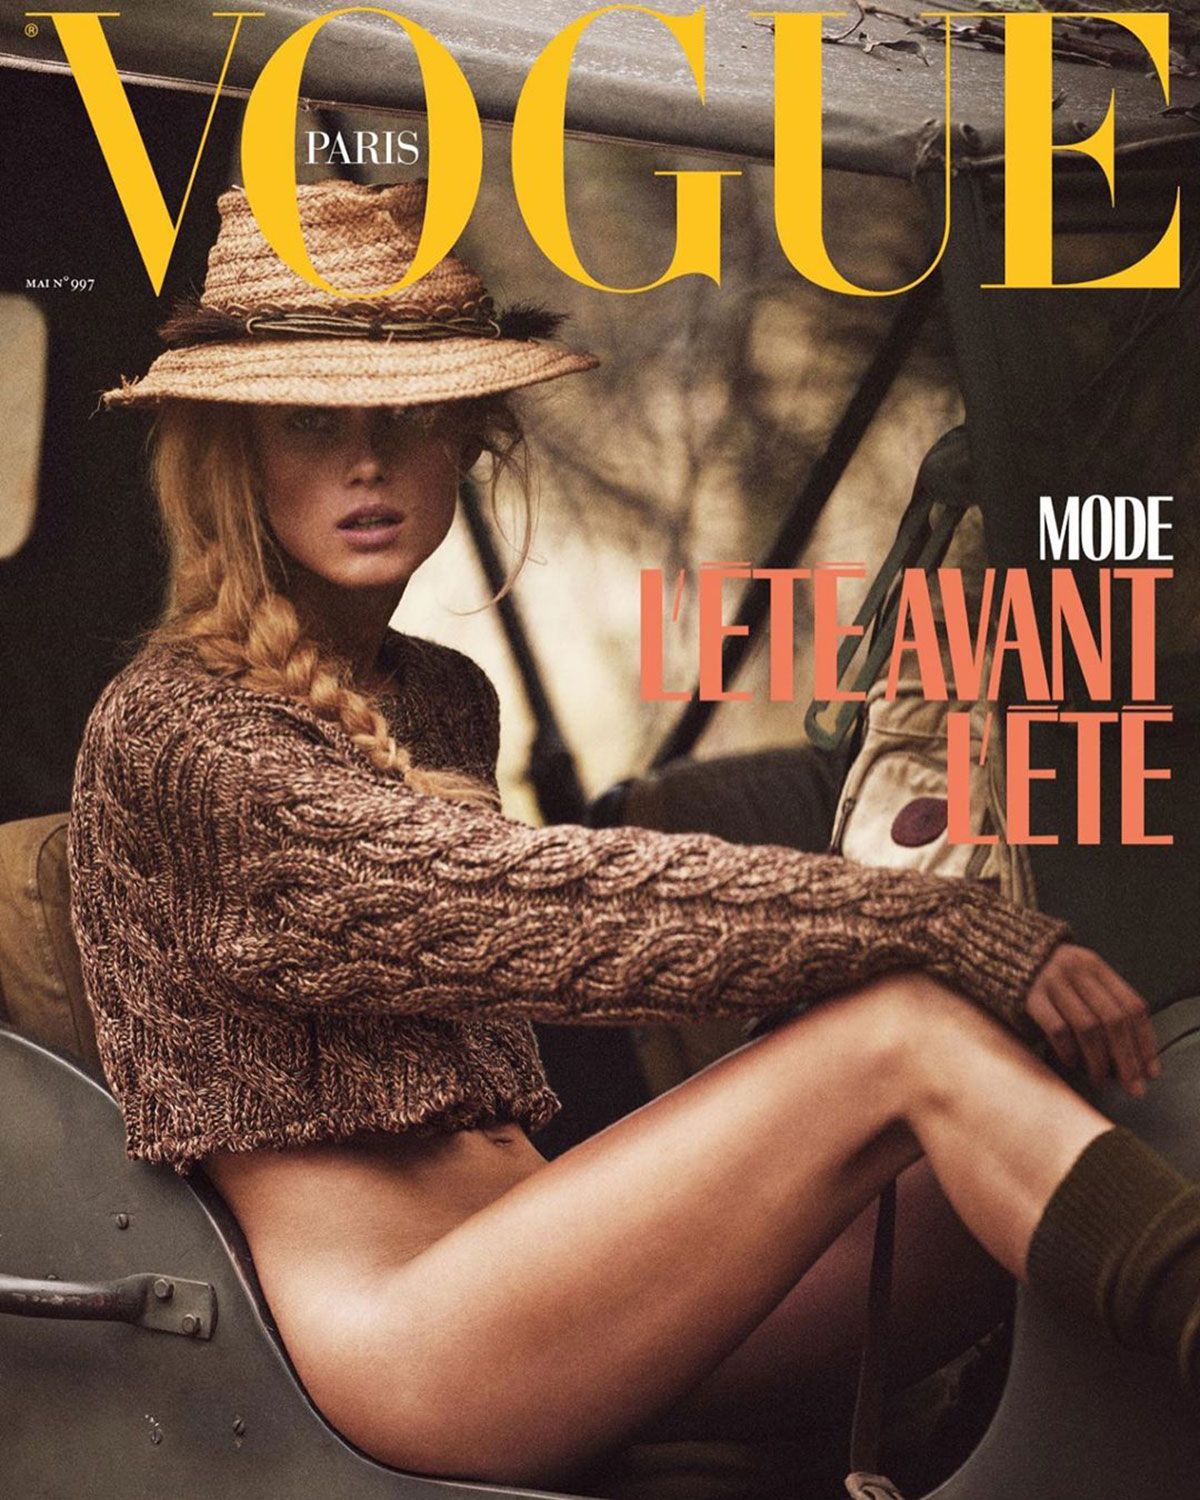 Vogue Paris's Cover Model Has Lost Her Pants